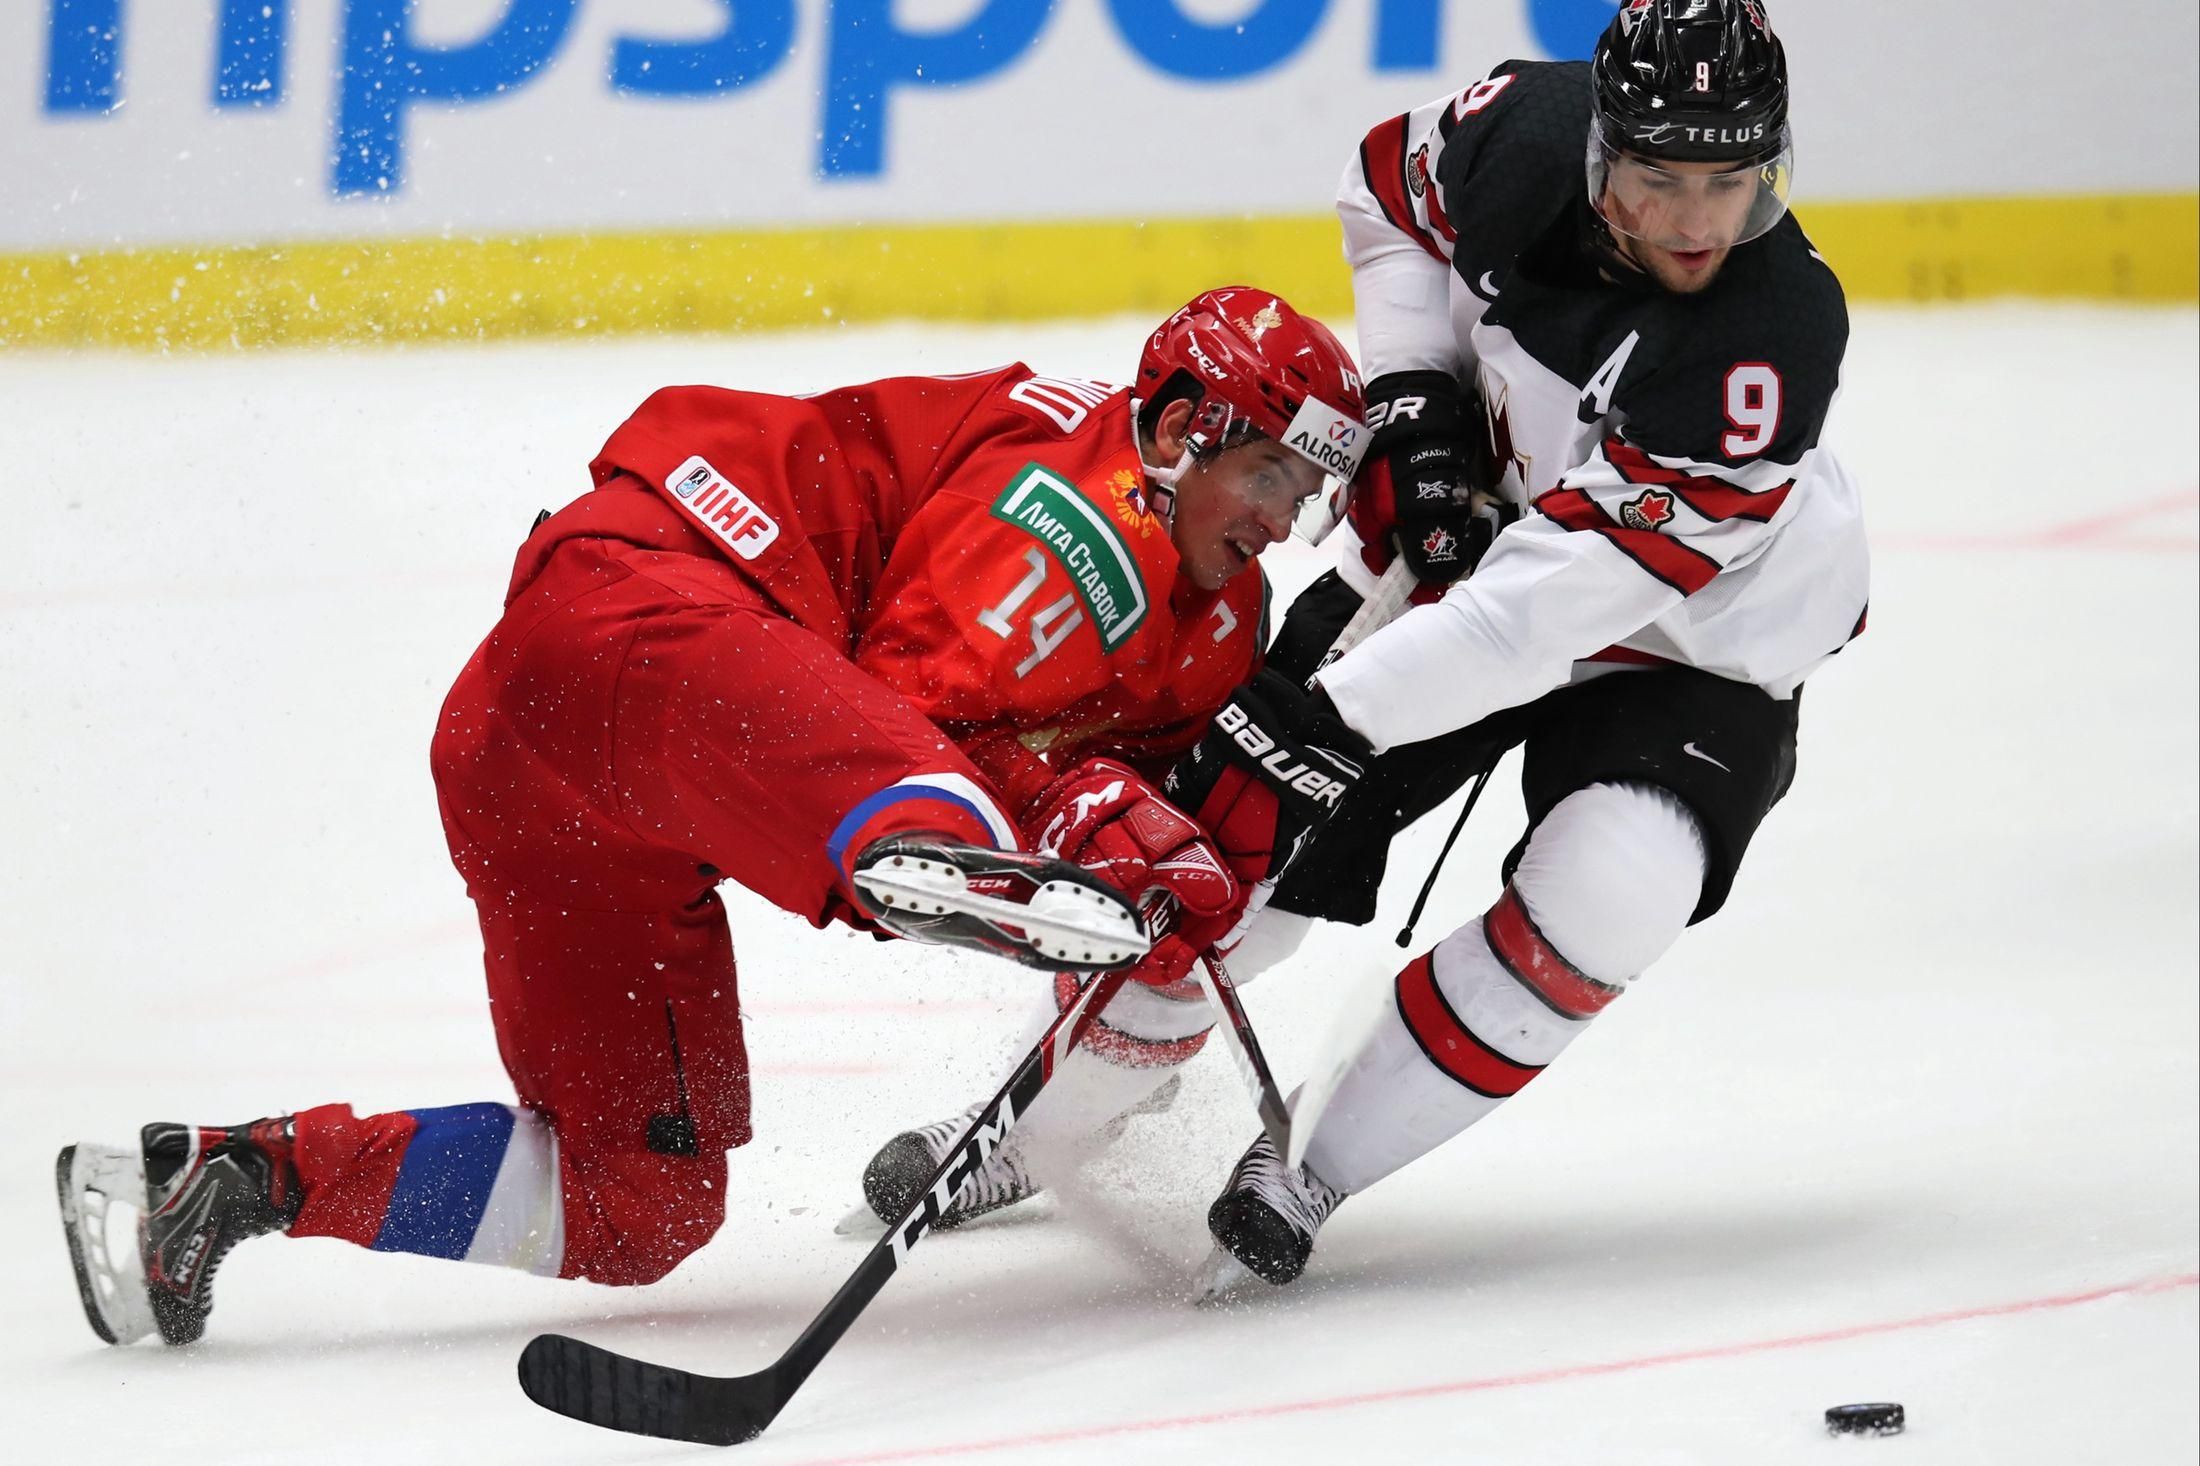 Капитан сборной Канады проигнорировал гимн России на чемпионате мира по хоккею – видео